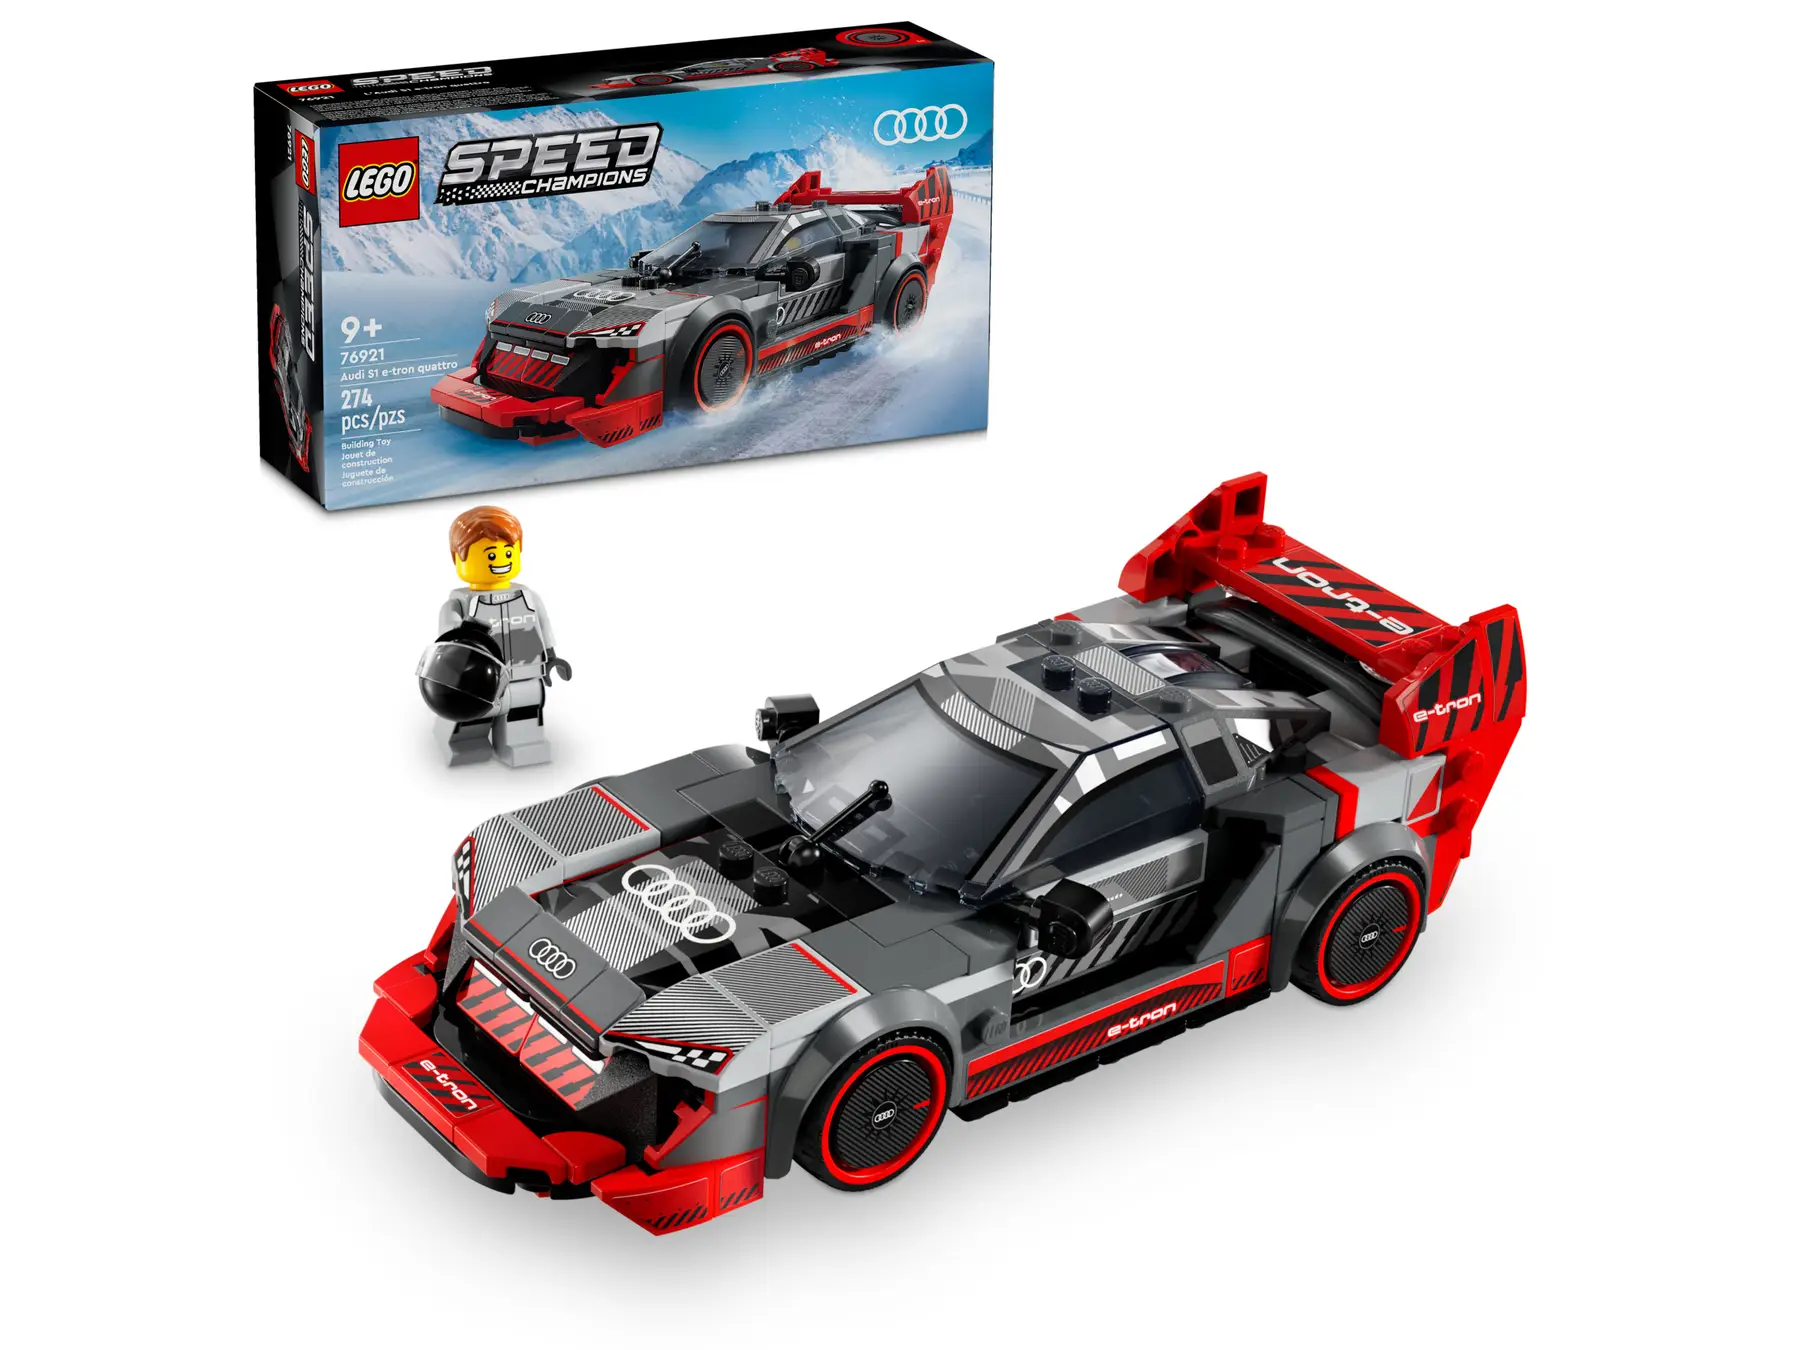 LEGO Speed Champions Audi S1 e-tron quattro Yarış Arabası 76921